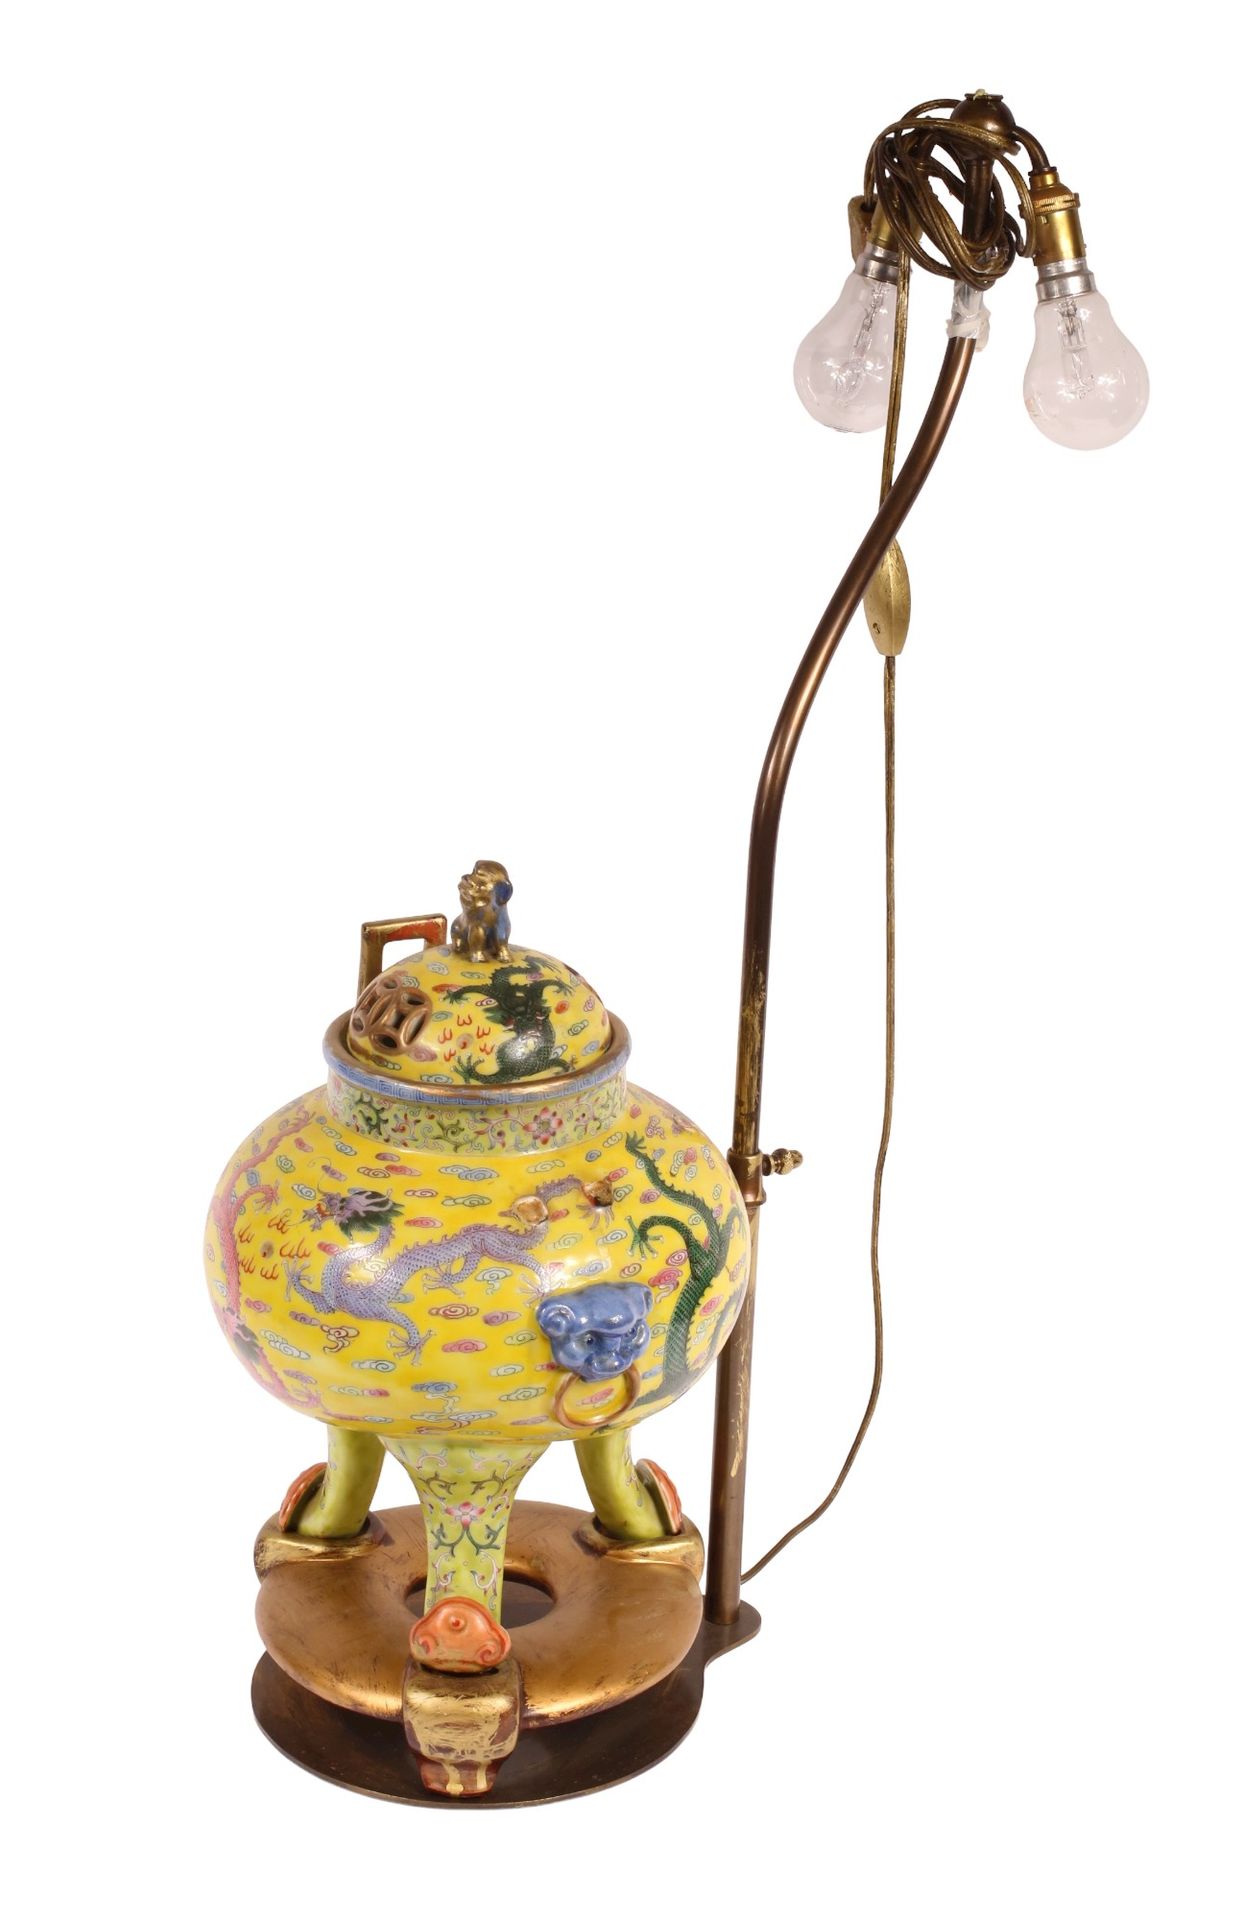 Null * 中国 - 约1900年

多色珐琅彩瓷器三足炉，炉身饰有七条龙，盖子上有两条龙，黄底云纹。两只手柄上有狮子头，脚为灵芝形状。背面有铁红的乾隆六字篆&hellip;